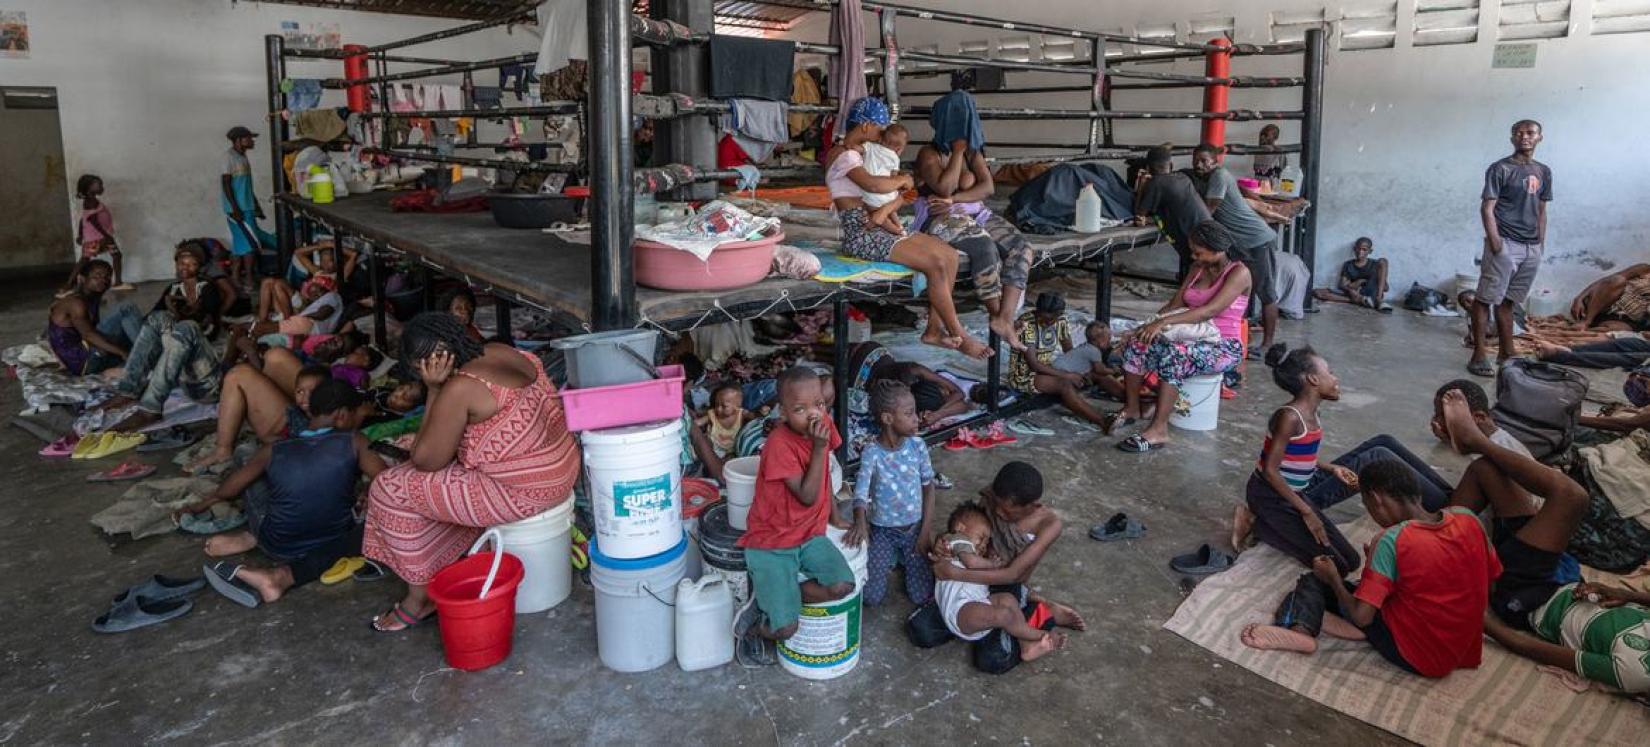 Des personnes déplacées s'abritent dans une arène de boxe du centre-ville de Port-au-Prince après avoir fui leur domicile lors d'attaques de gangs en août 2023.